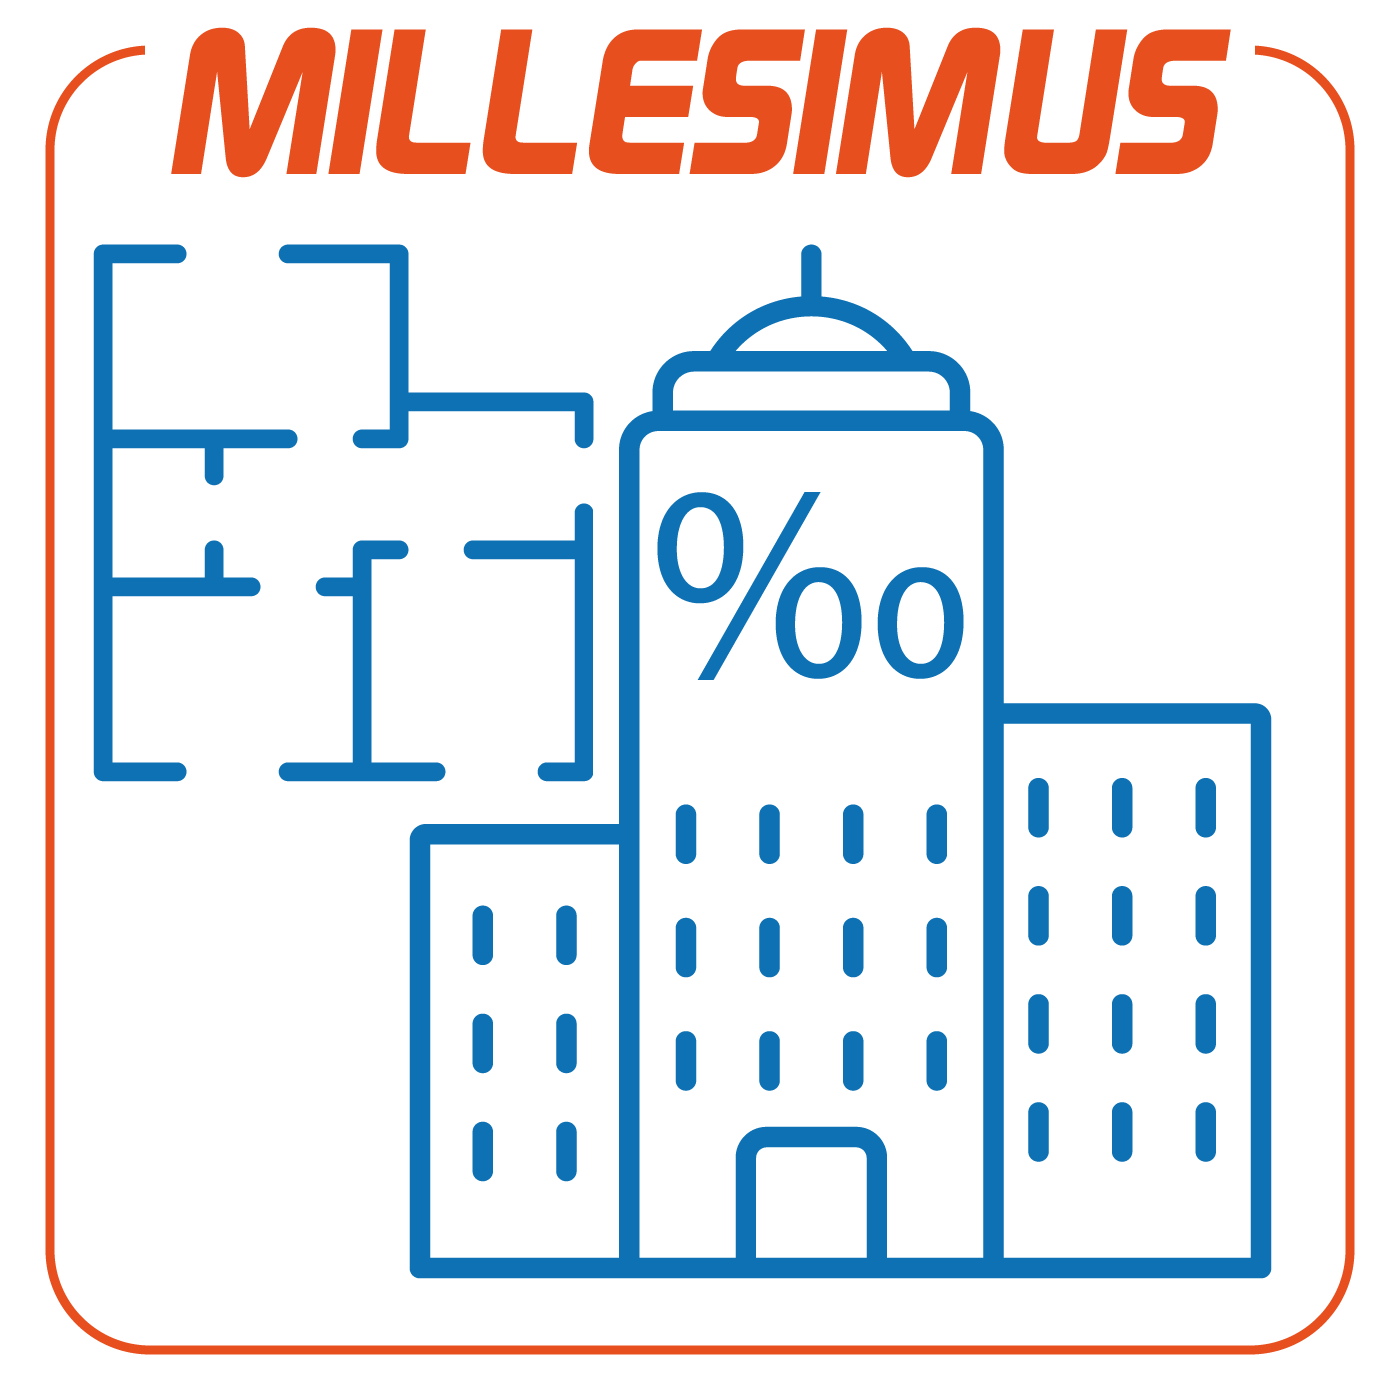 MillesimusSoftware per la predisposizione ed il calcolo delle tabelle millesimali, la stesura dei regolamenti condominiali e la contabilizzazione del calore (UNI 10200:2018)